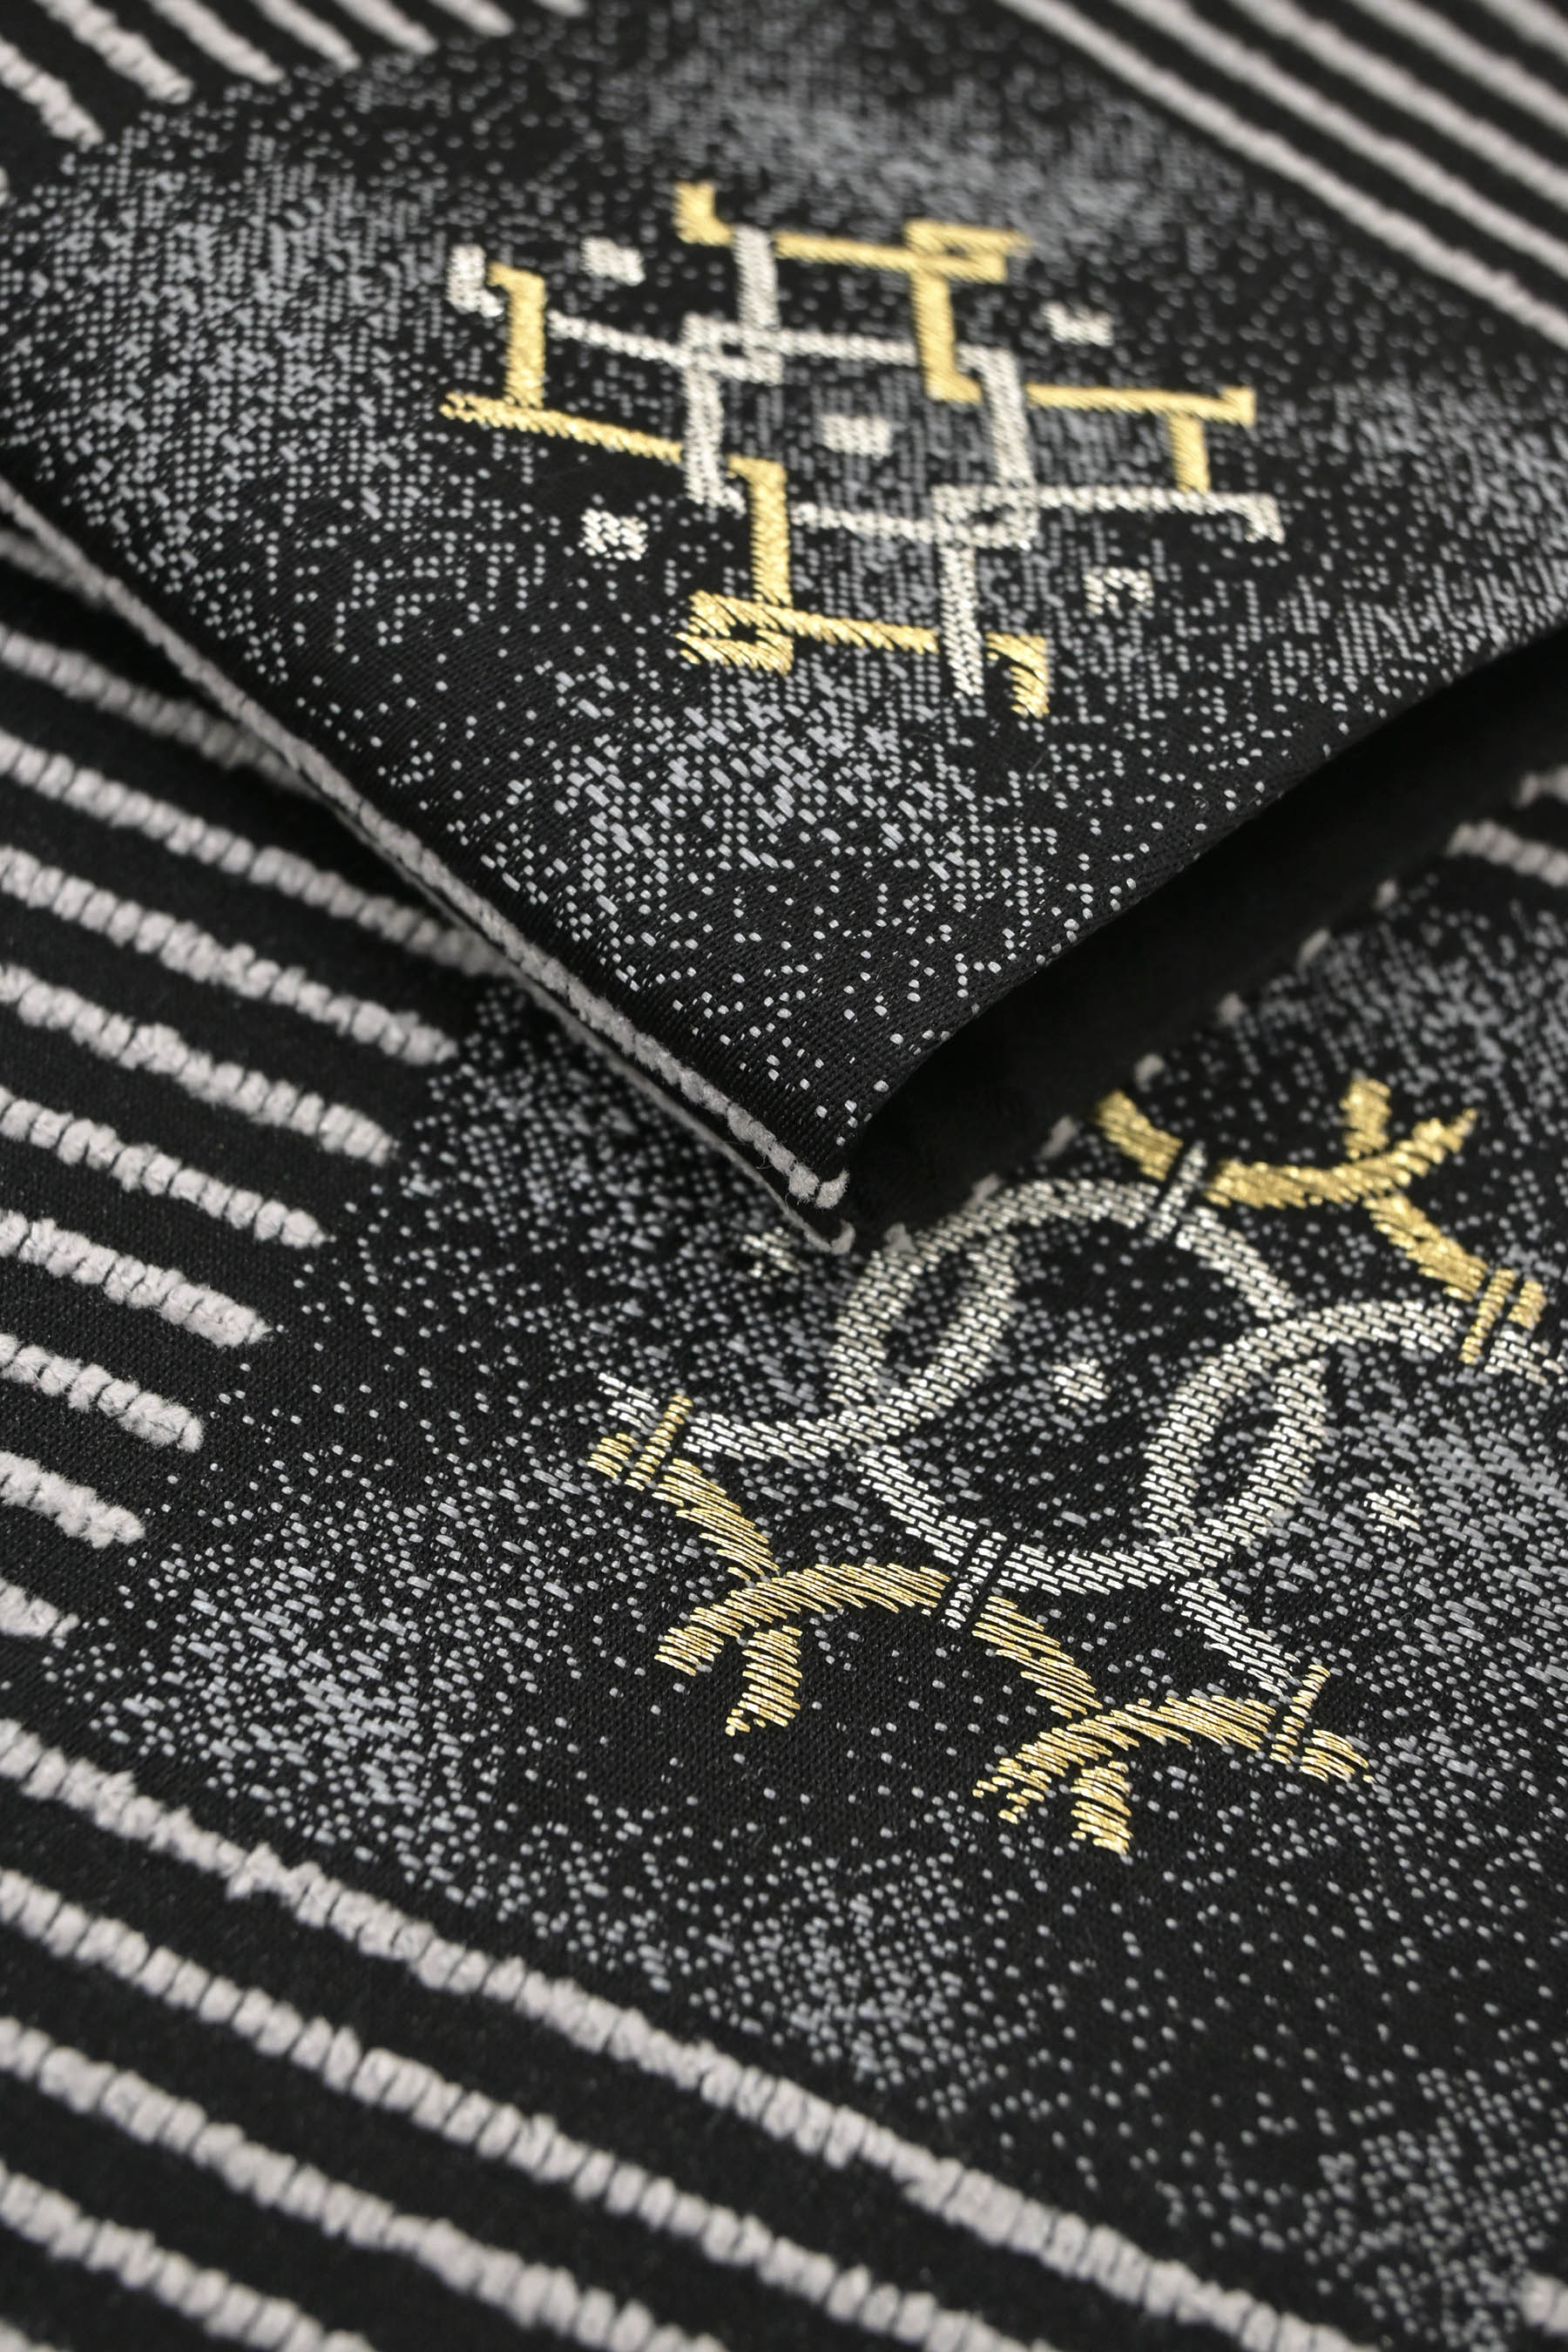 創作袋帯 モール糸使用 ≪御仕立て上がり・中古品≫ 「抽象市松紋」 織の風合い豊かに！